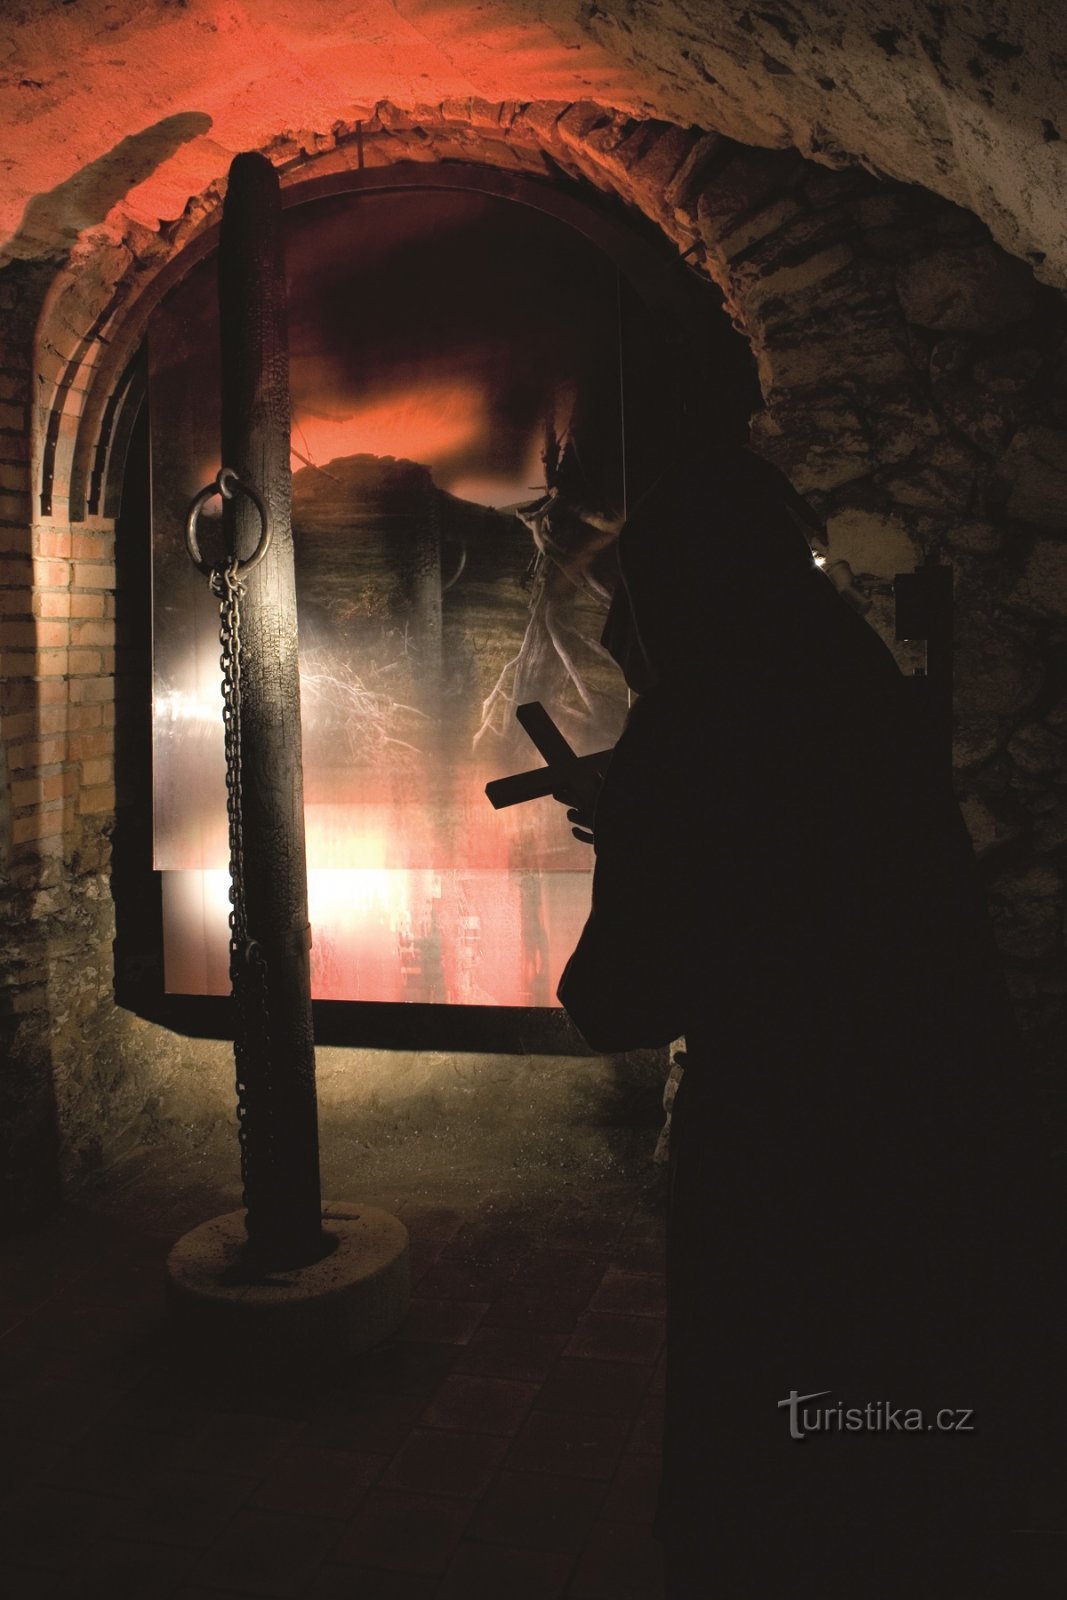 女巫审判博览会 - MěU Šumperk 的照片档案。